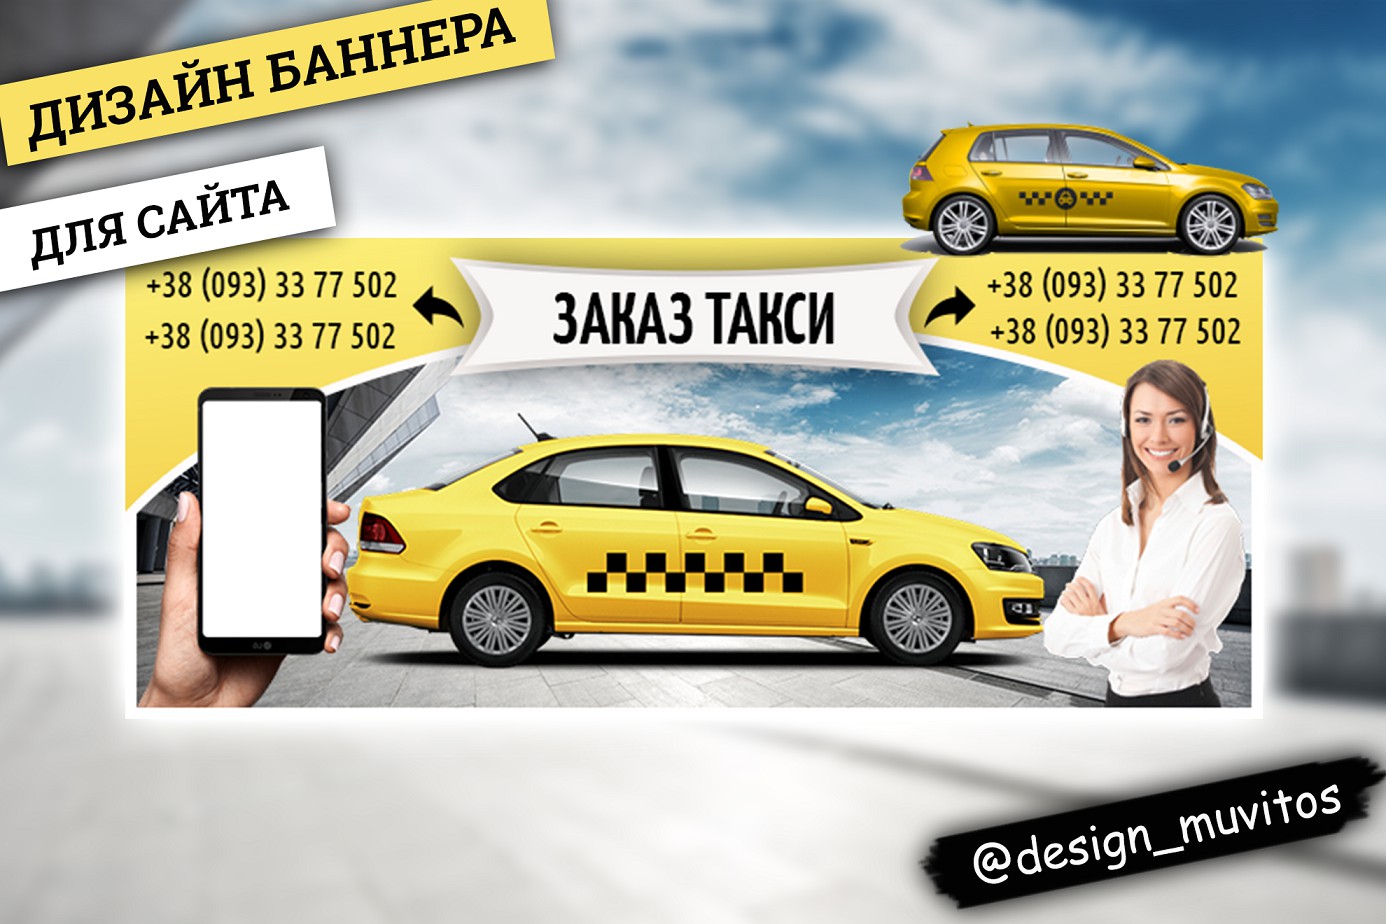 Таксопарки сбермаркет. Баннер такси. Реклама такси. Рекламный баннер такси. Рекламная листовка такси.